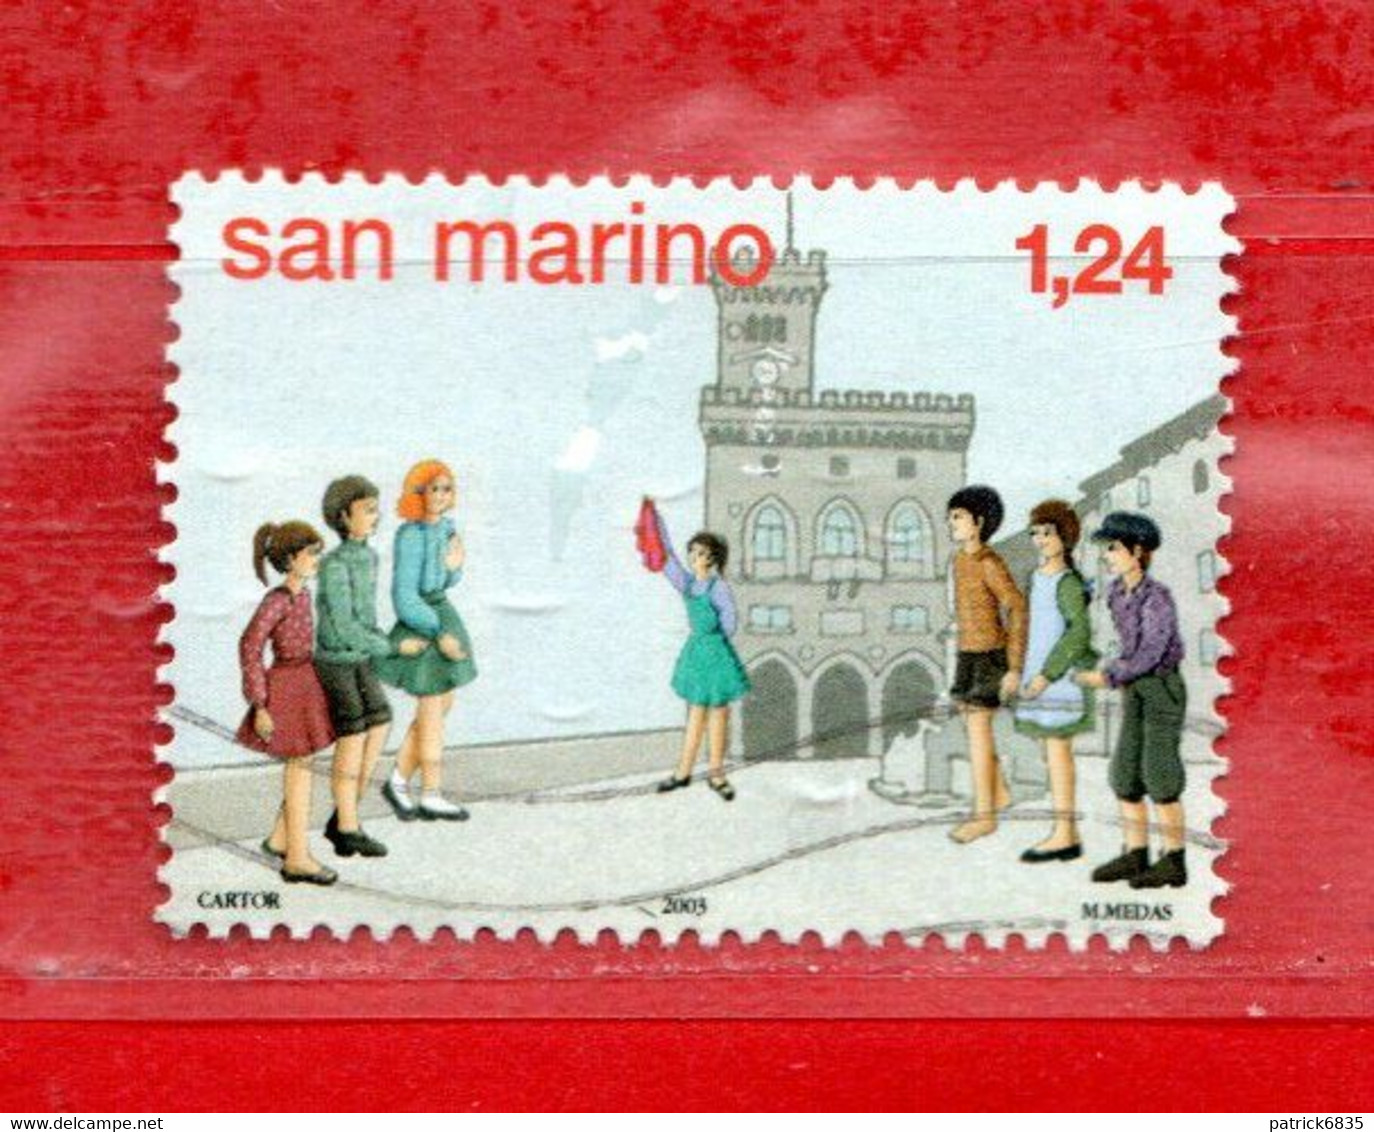 San Marino ° 2003 - AMARCORD - Antichi Giochi Giovanili. Unif. 1952. Usato - Oblitérés